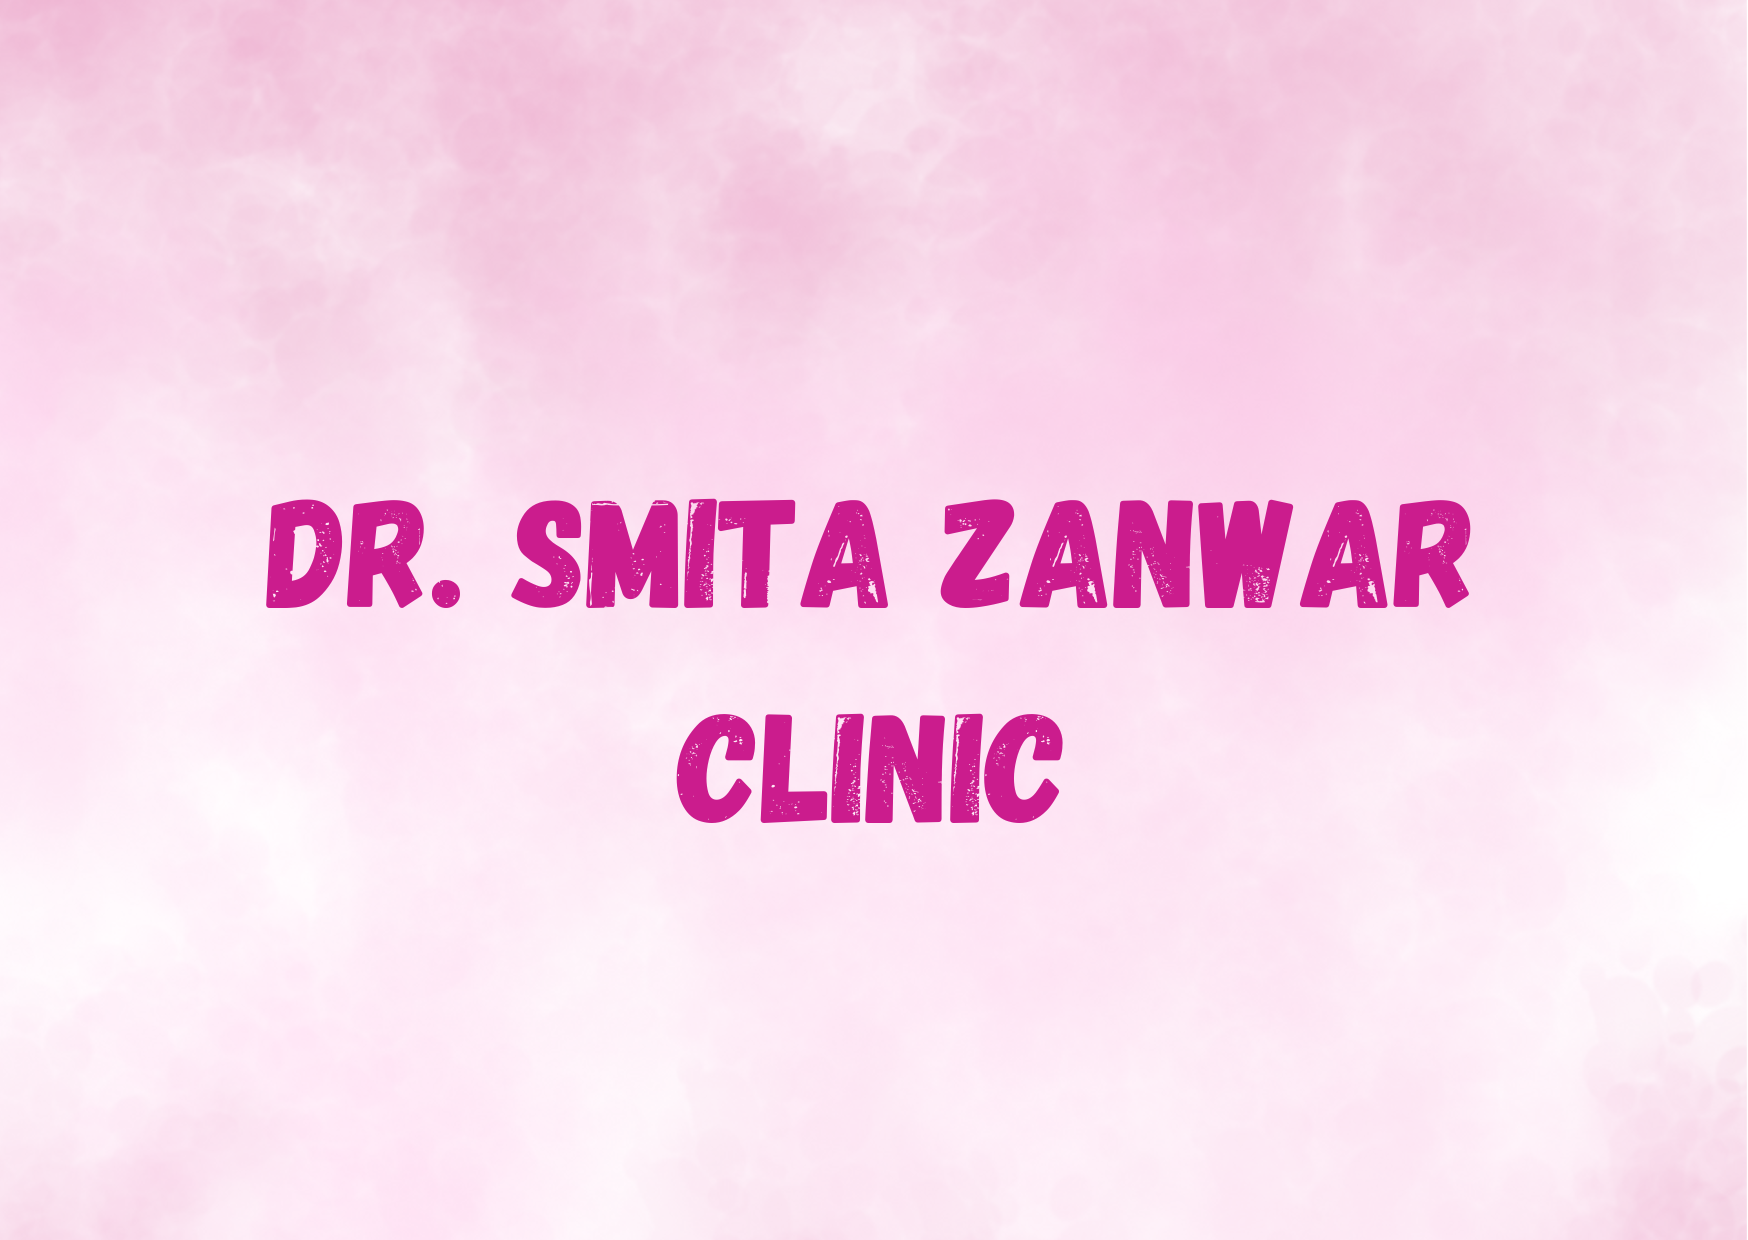 Dr. Smita Zanwar Clinic,   